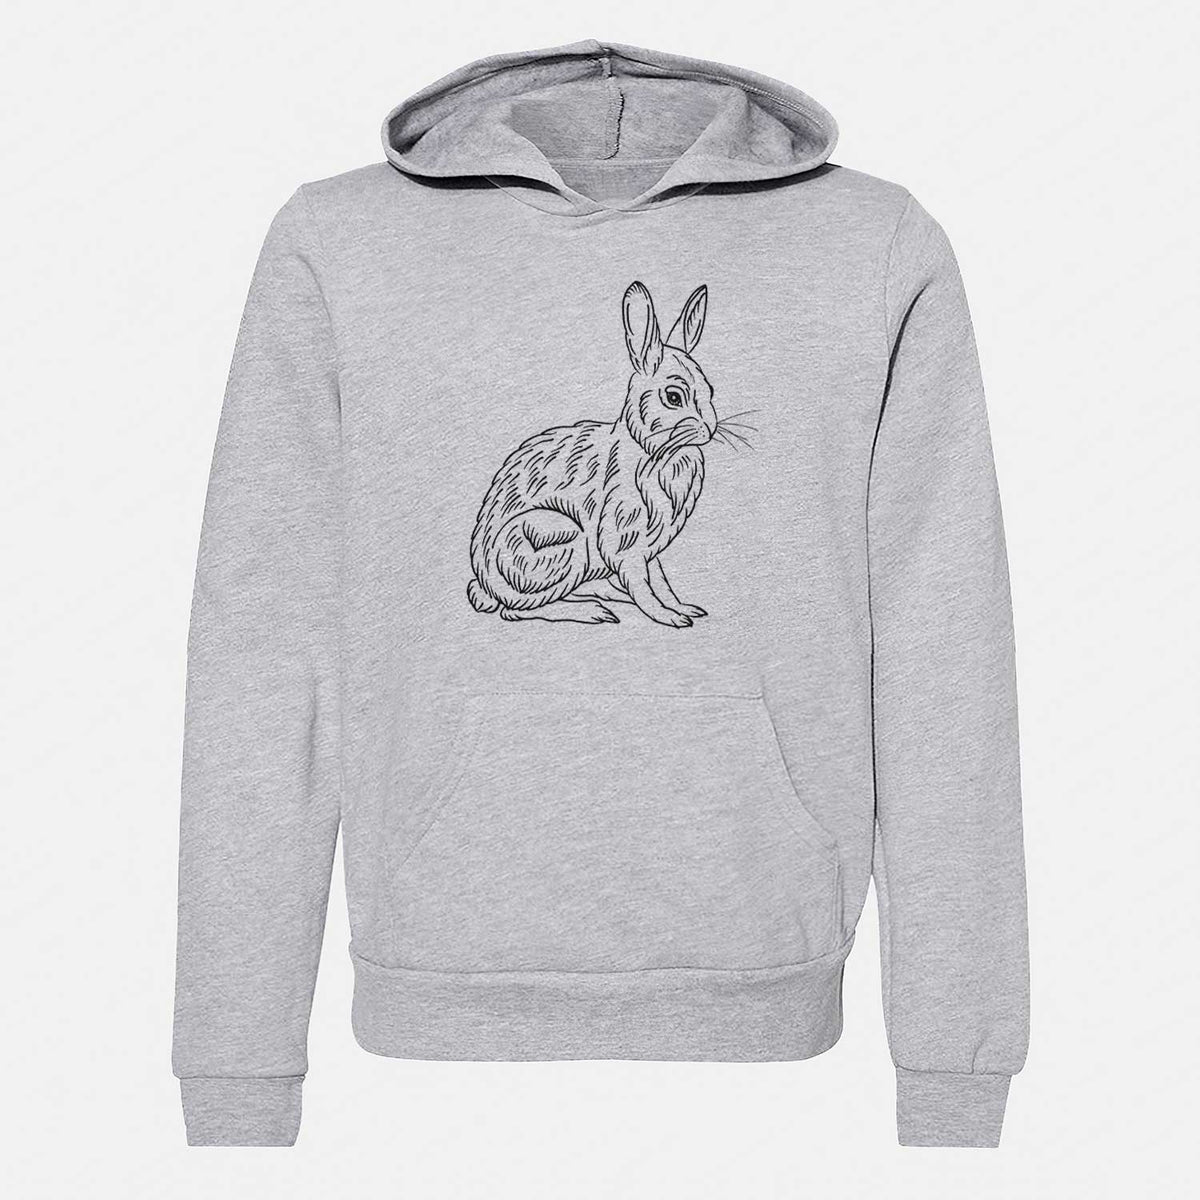 Snoeshoe Hare - Youth Hoodie Sweatshirt